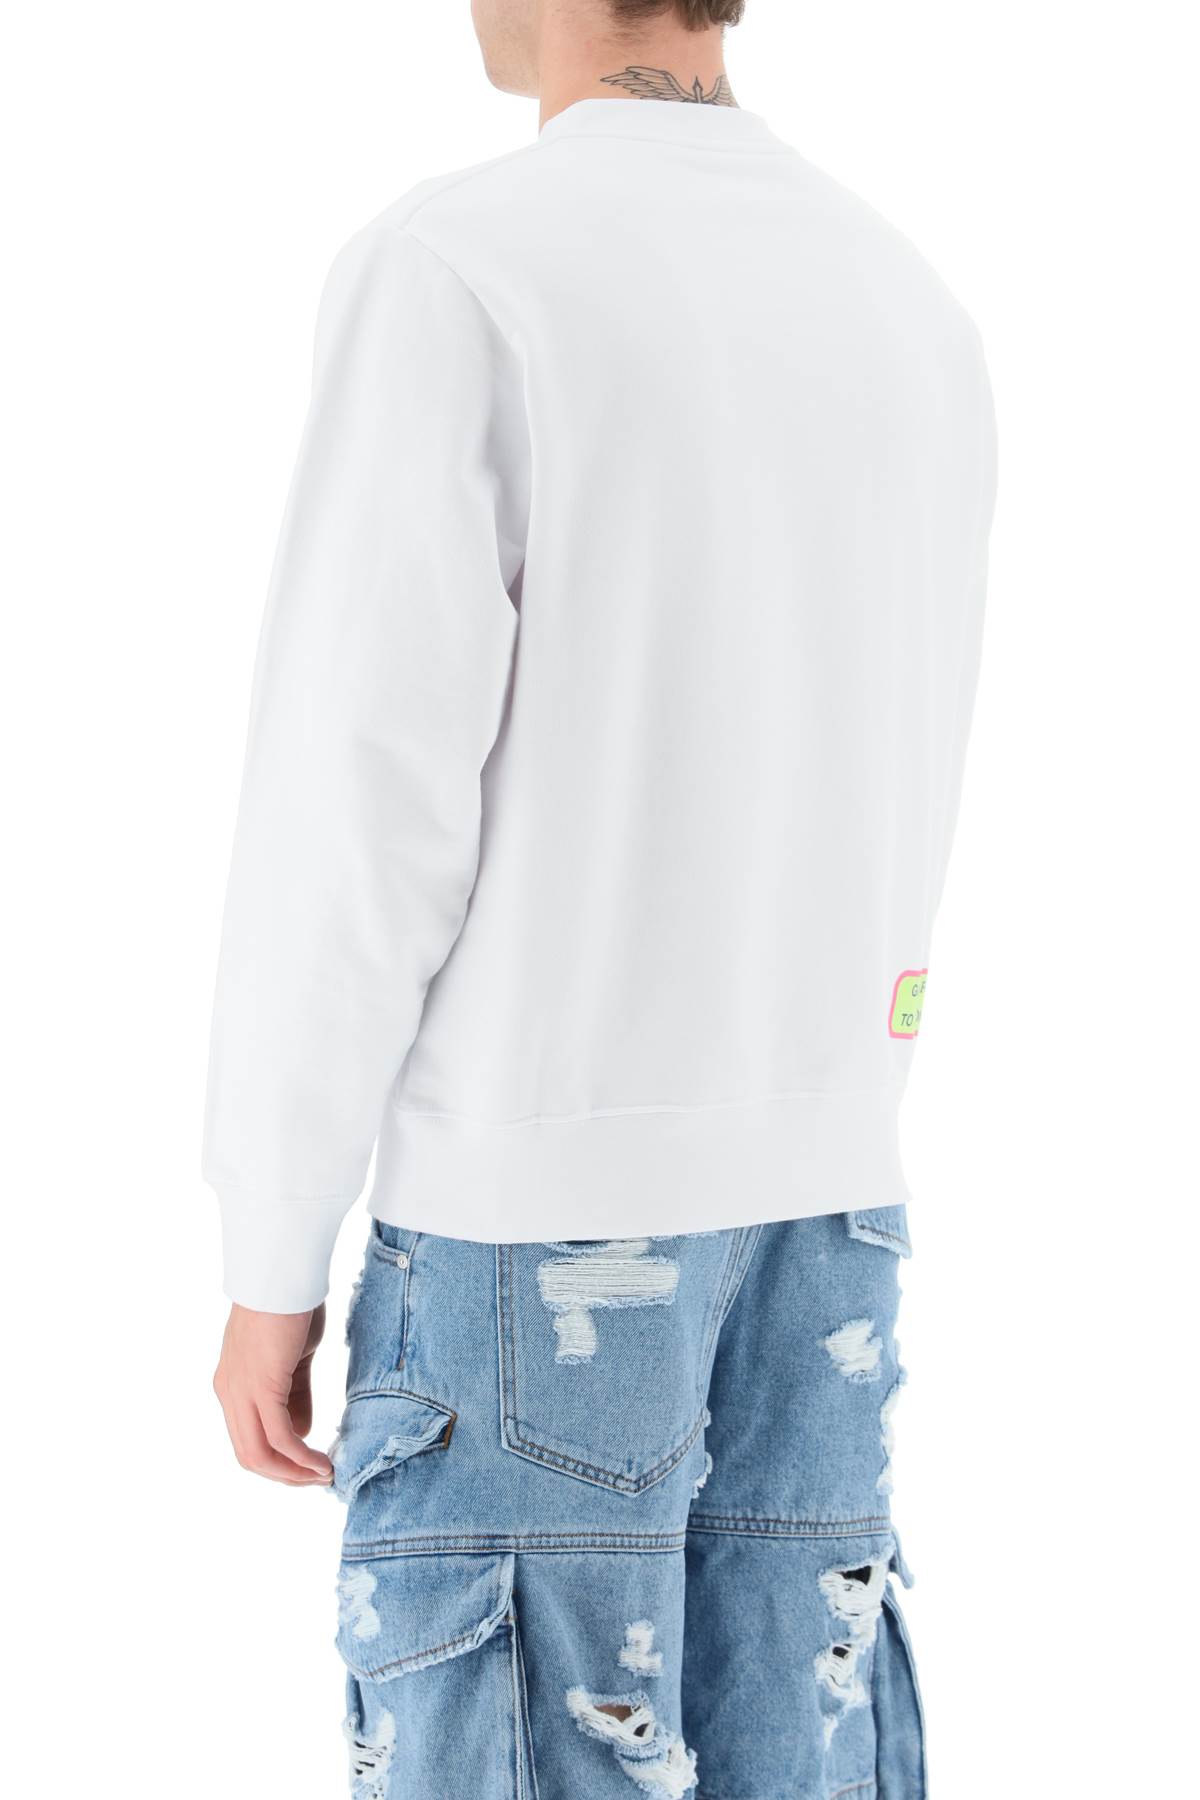 Shop Gcds Surfing Weirdo Sweatshirt In White (white)